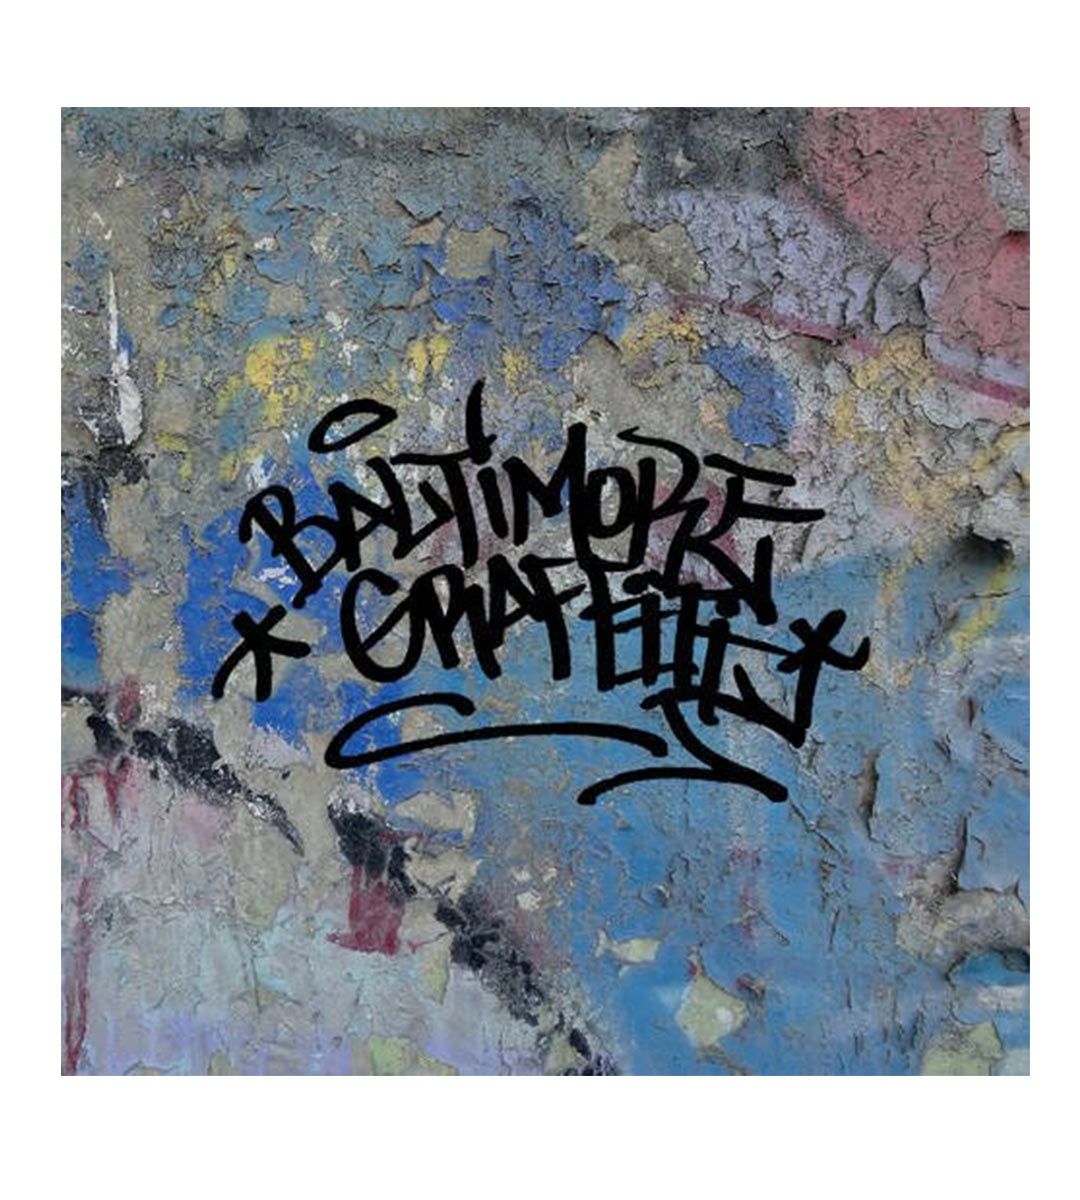 Graffiti de Baltimore